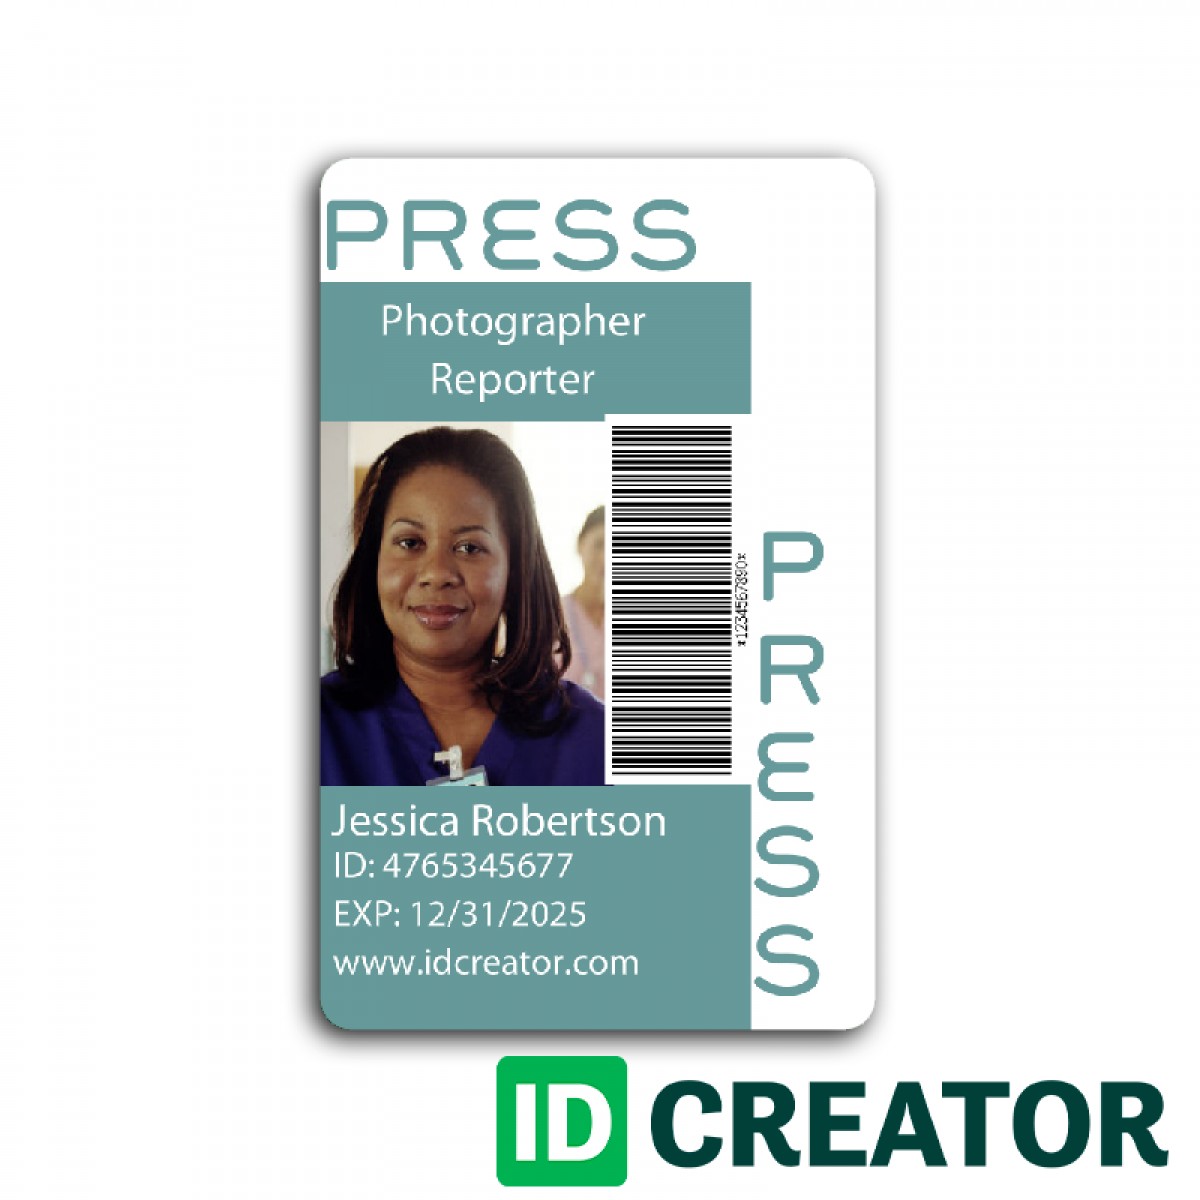 Press Pass Custom Credentials Made Same Day By IDCreator Com Document Passes